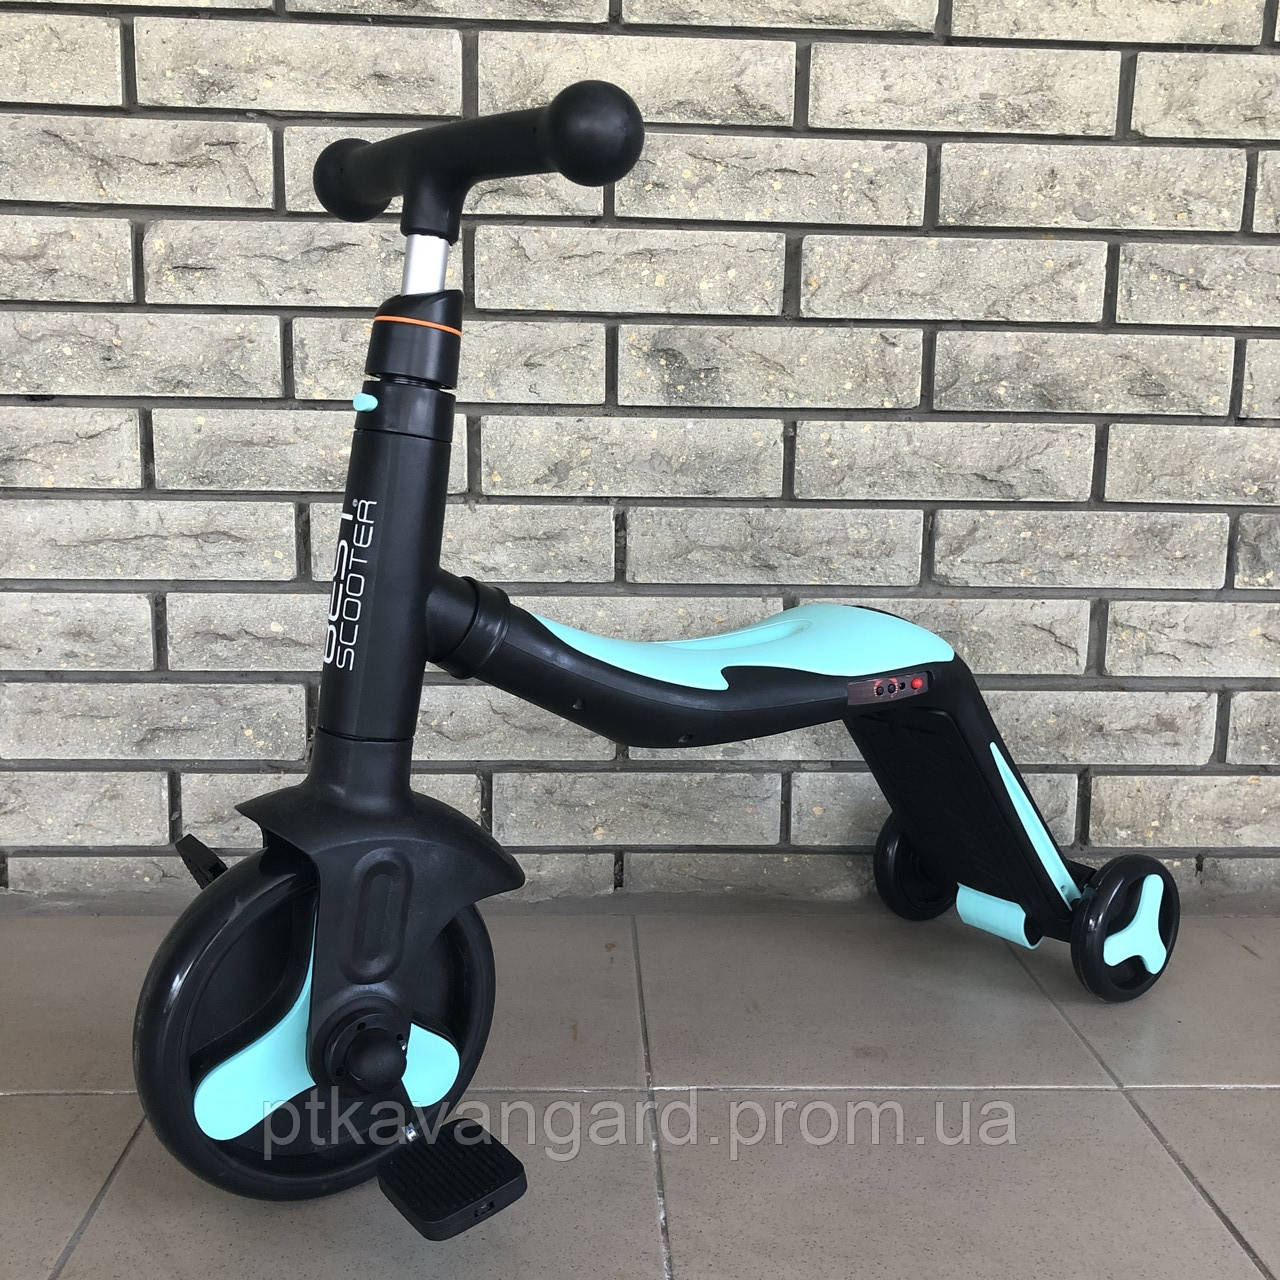 Трехколесный Велосипед трансформер 3 в 1 Голубой Самокат Беговел музыка подсветка Best Scooter JT 20255, фото 1